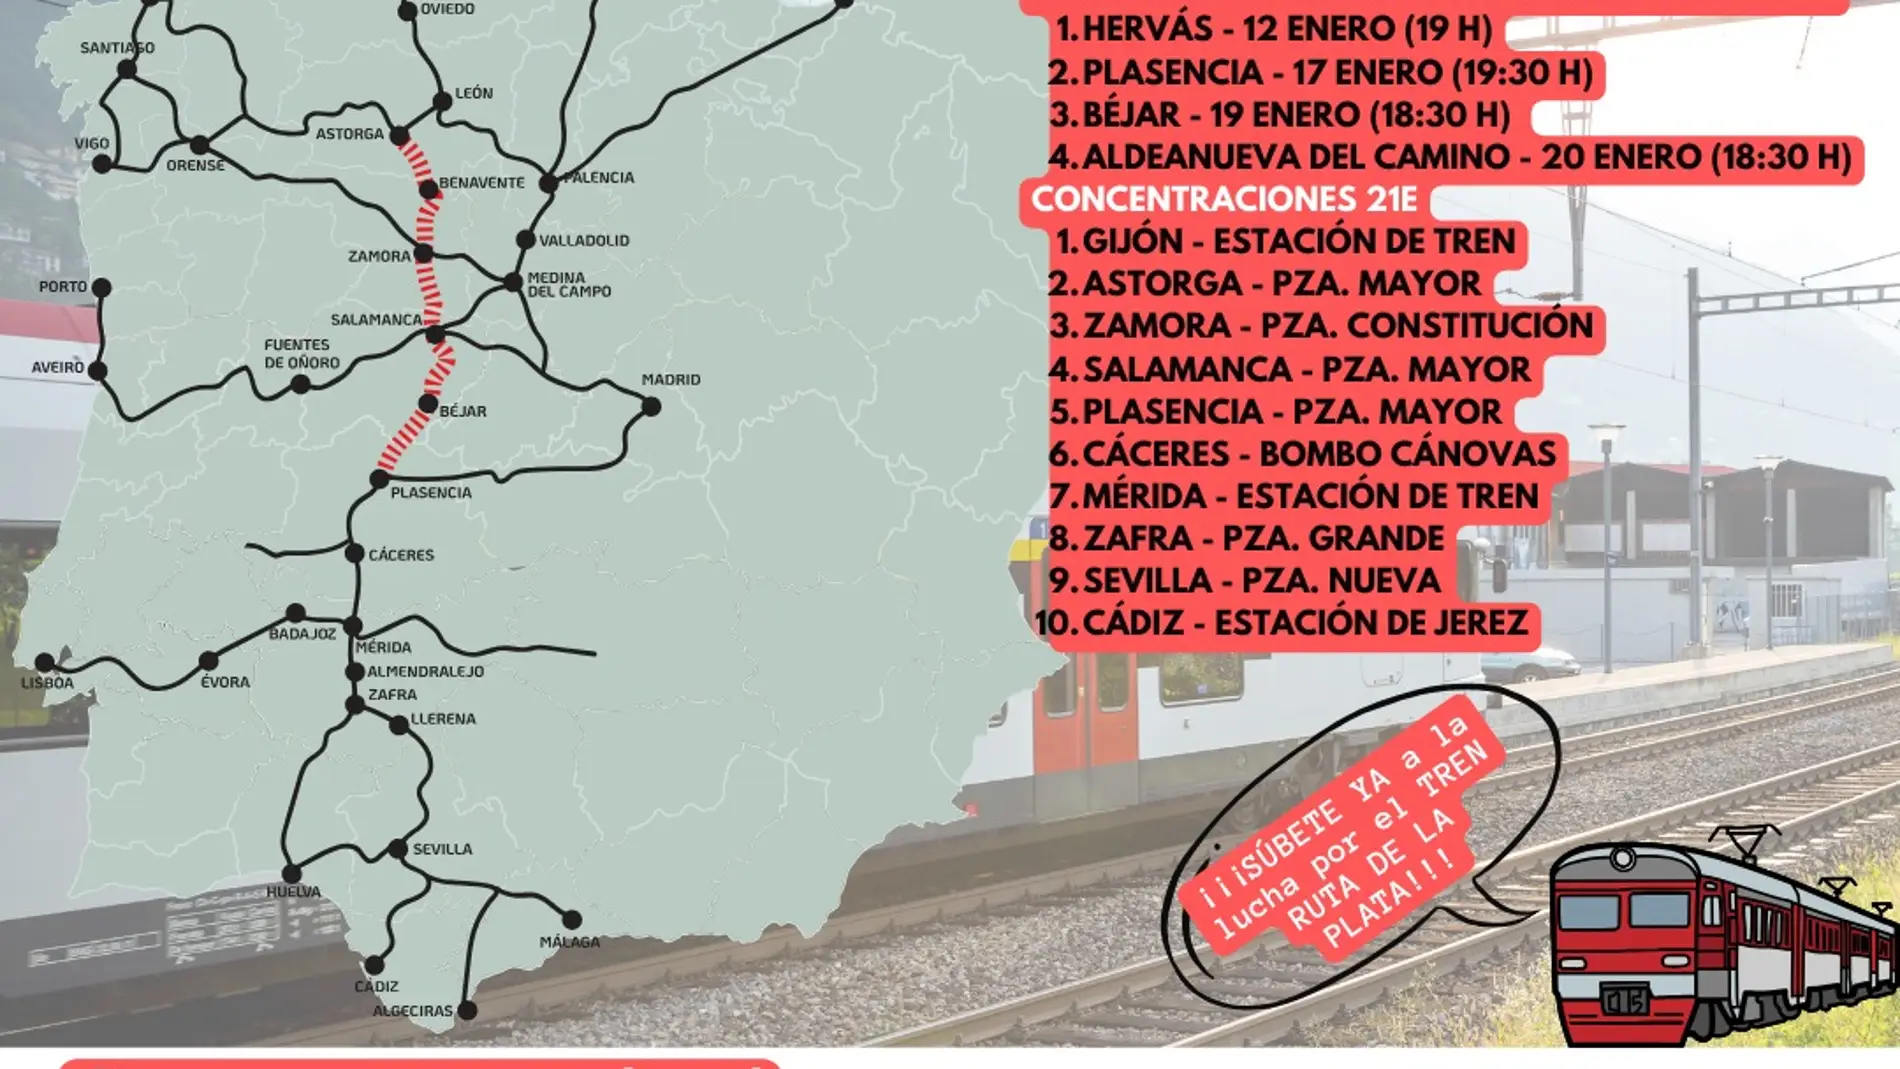 El domingo 21 de enero diversas concentraciones reclamarán la recuperación del Tren "Ruta de la Plata" a lo largo de este eje